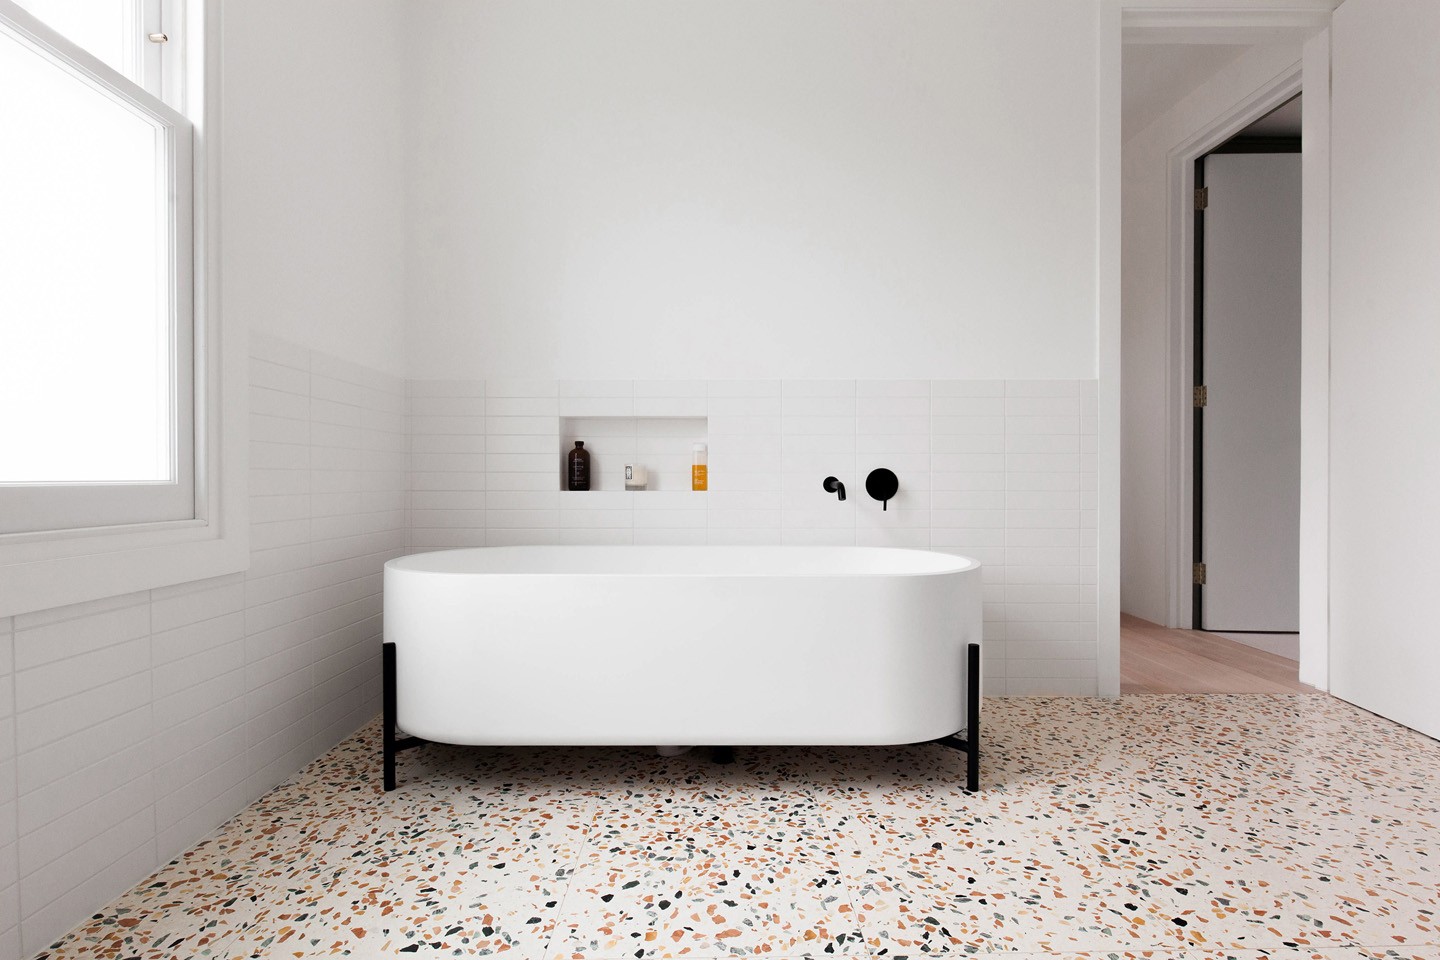 Décor do dia: piso de marmorite no banheiro (Foto: Emanuelis Stasaitis/Divulgação)